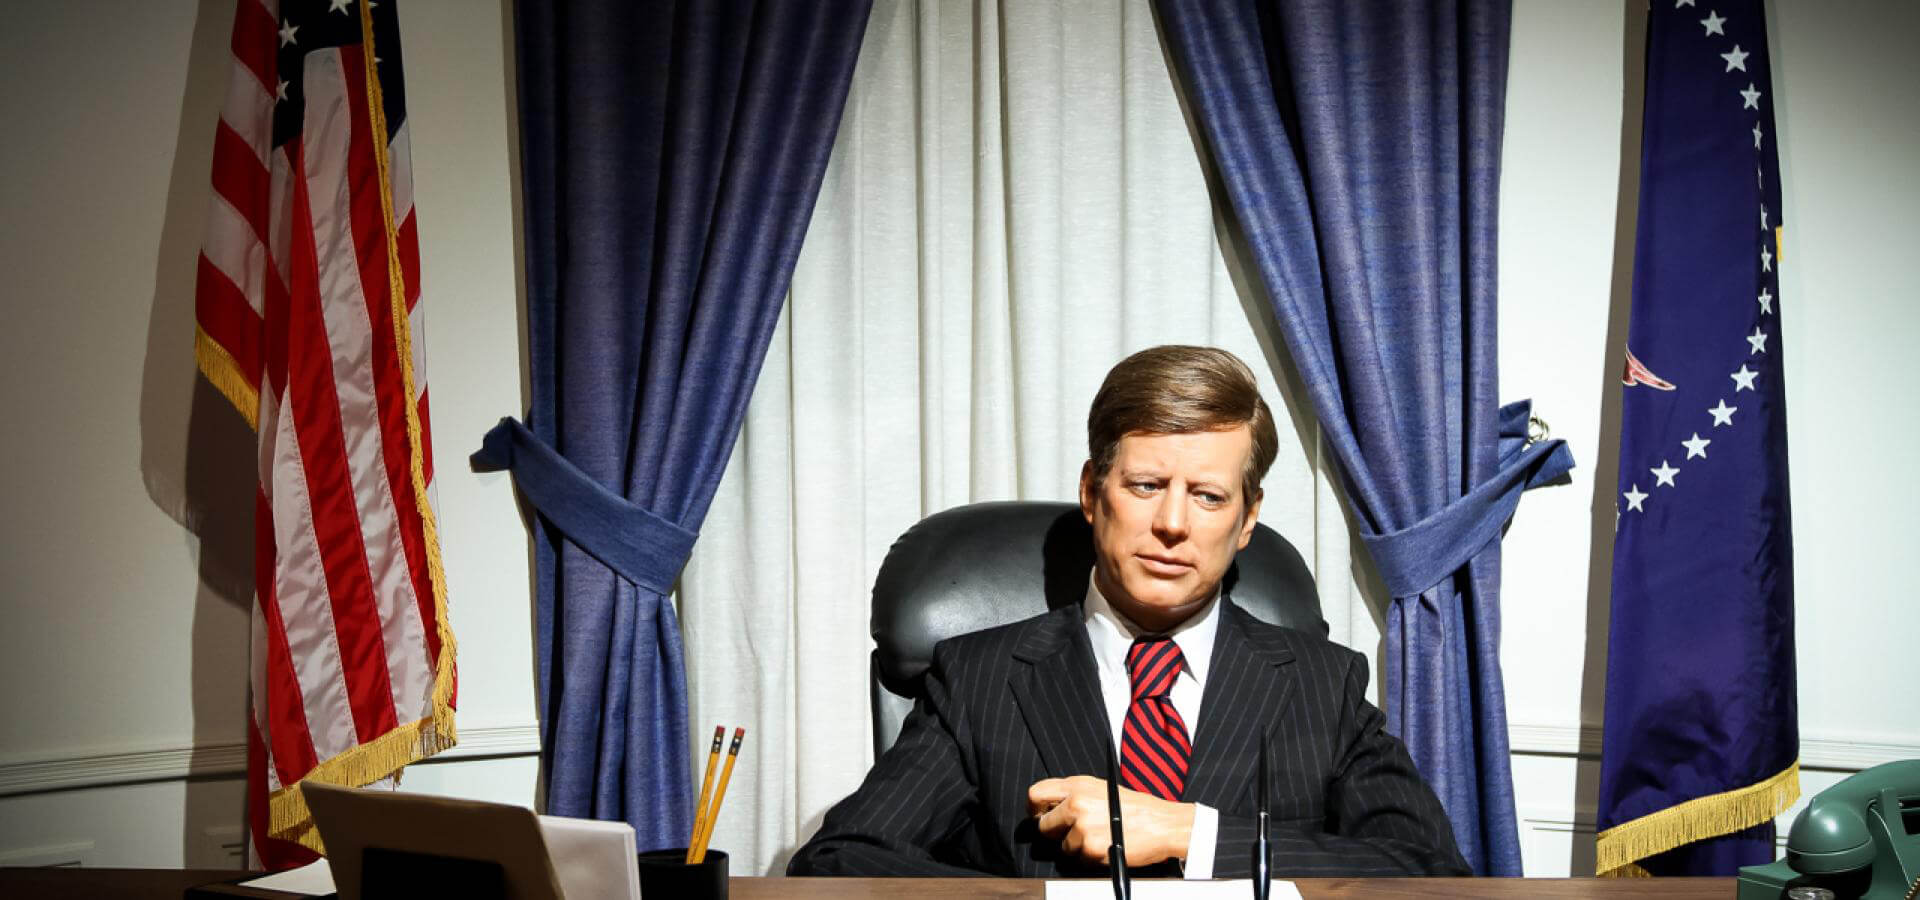 John F. Kennedy in the Oval Office